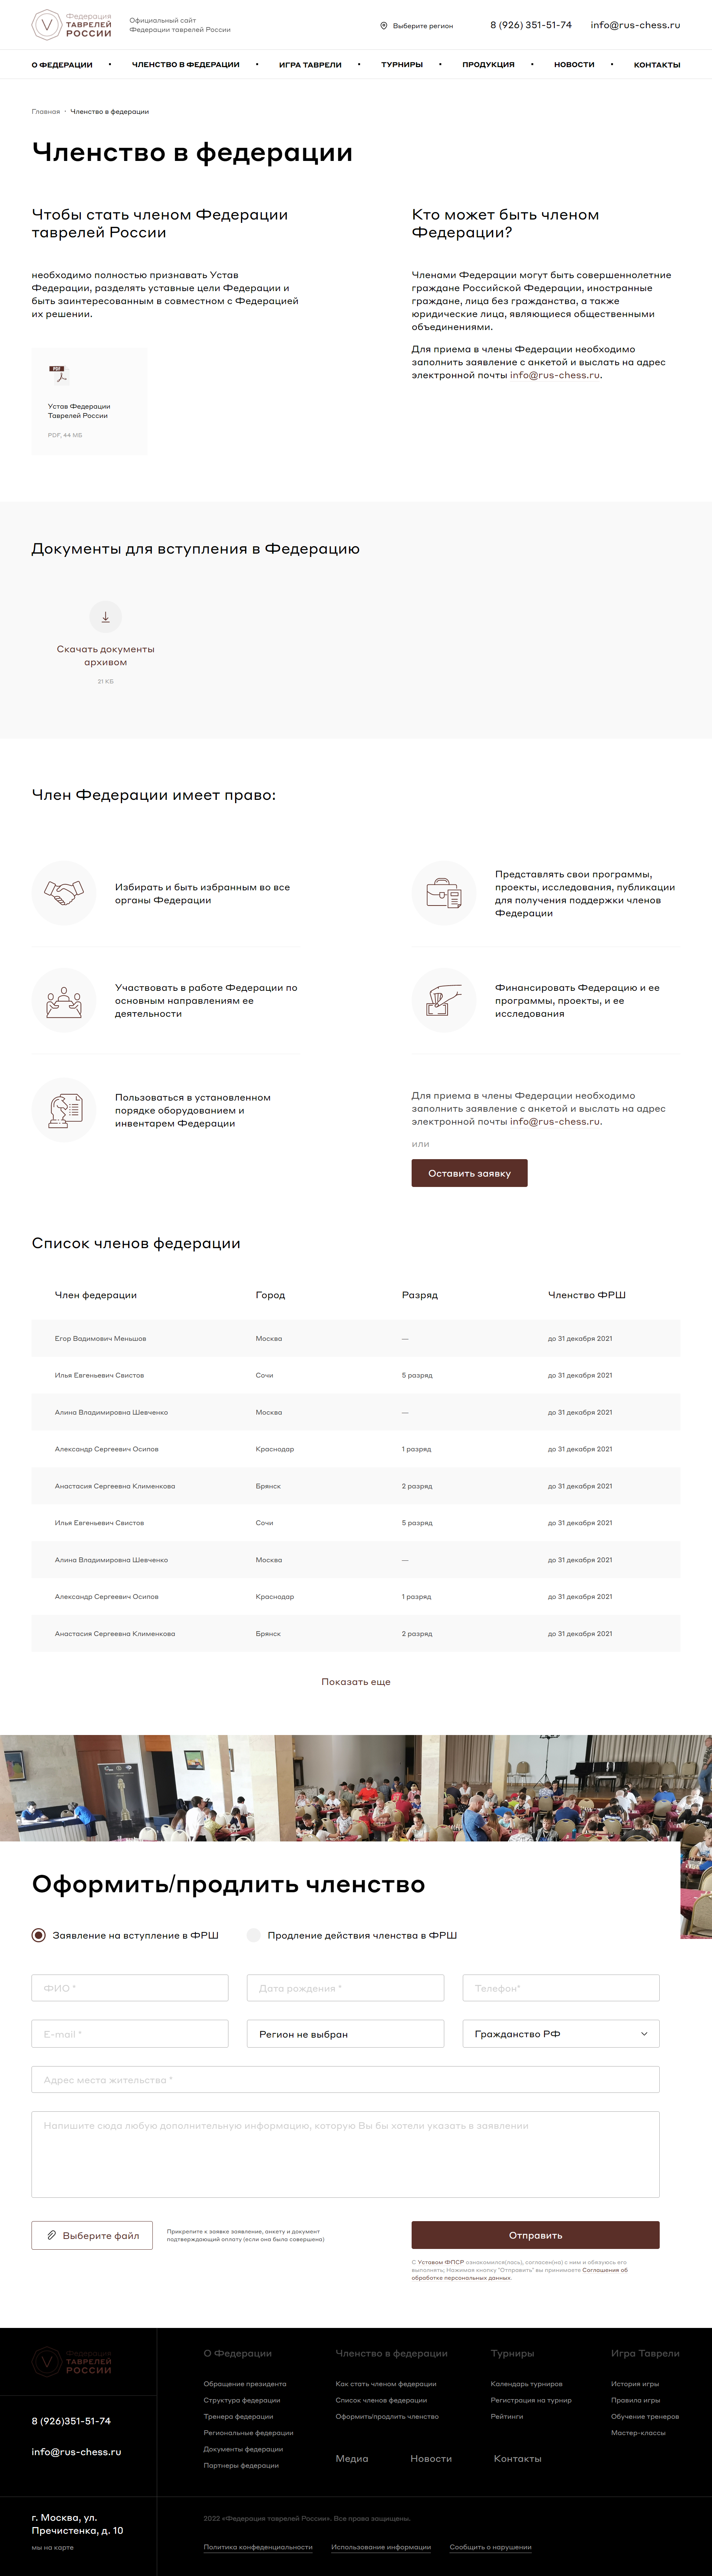 официальный сайт федерации таврелей россии